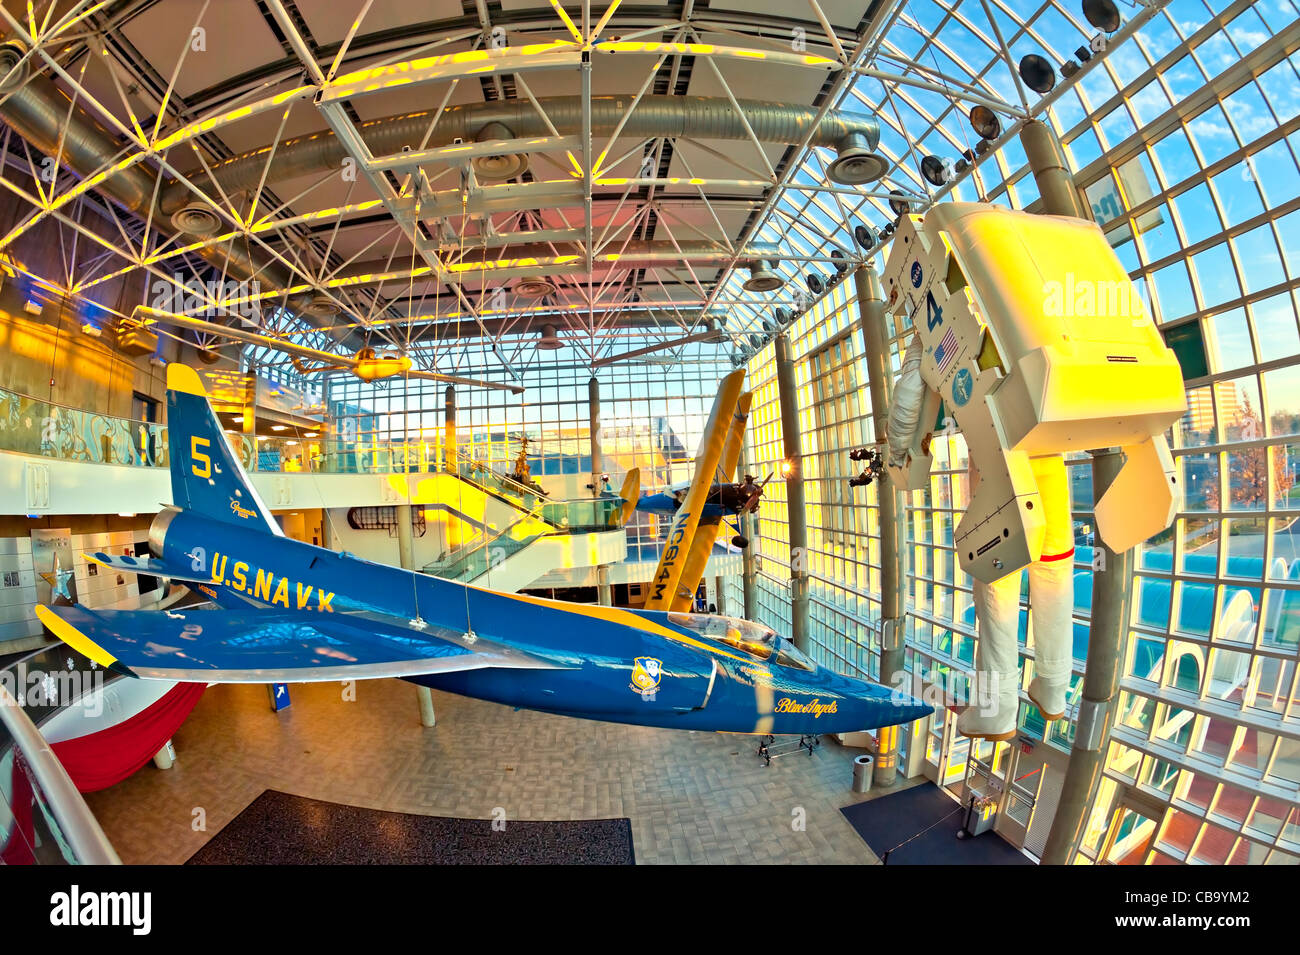 Wiege der Luftfahrt Luft- und Raumfahrt-Museum, F11 Jet & EVA Astronaut von  Atrium Lobby Decke, New York, abgehängt Dämmerung 2011-12-02  Stockfotografie - Alamy